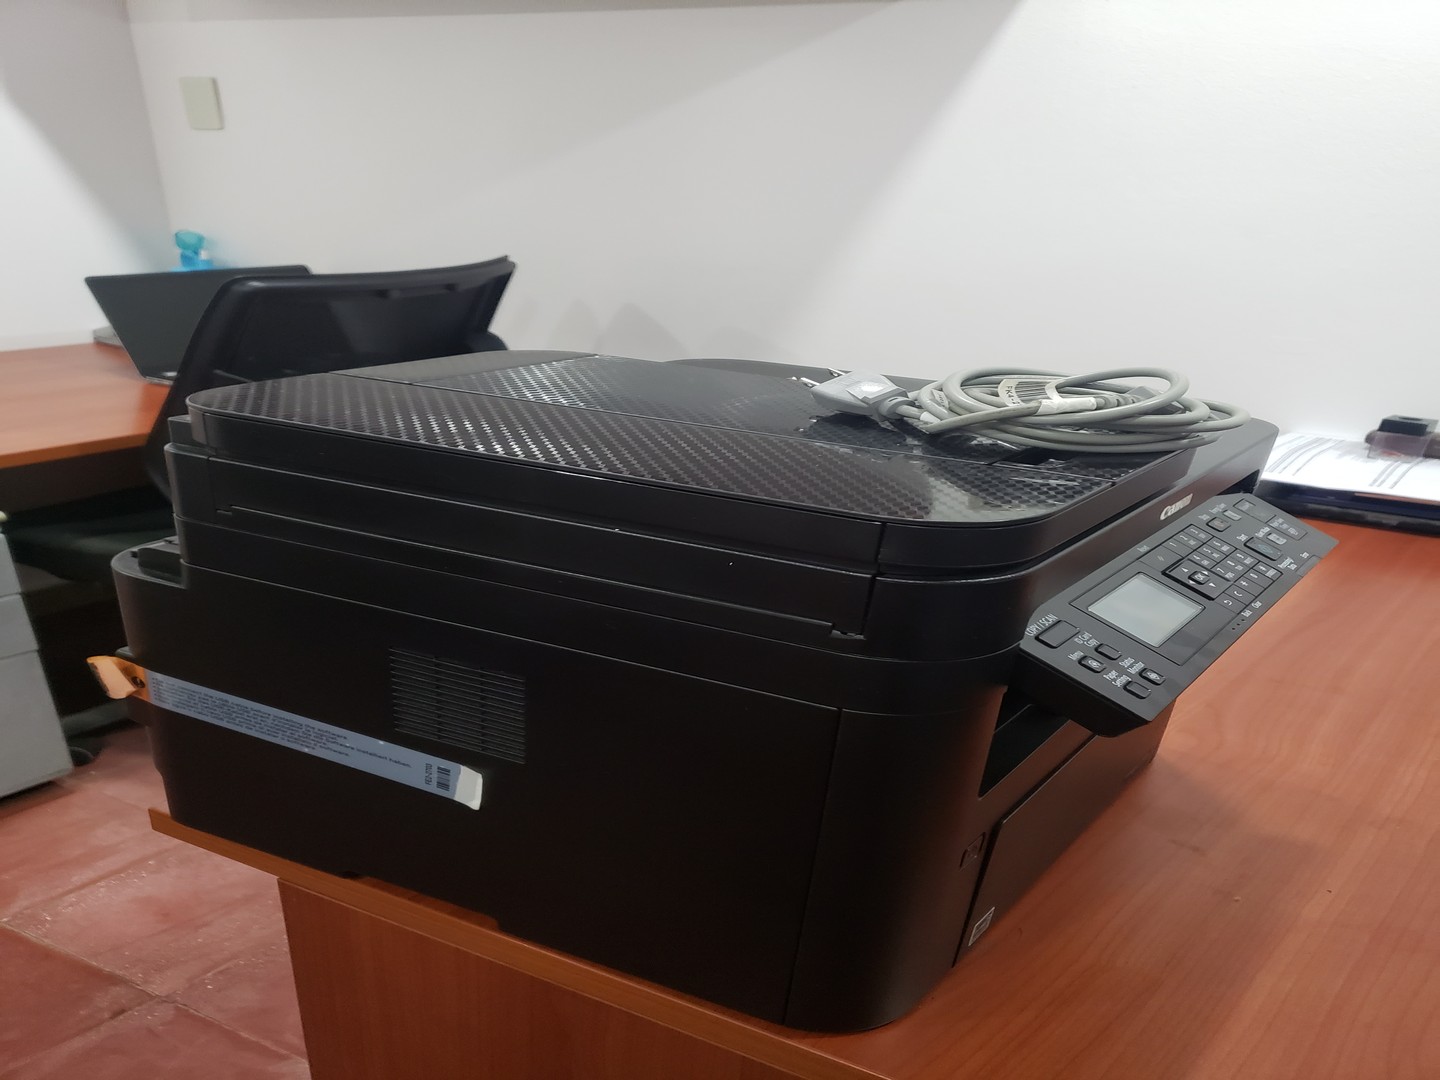 impresoras y scanners - Impresora Canon mff wd 264 multifuncional casi nueva con tonner nuevo incluido 1